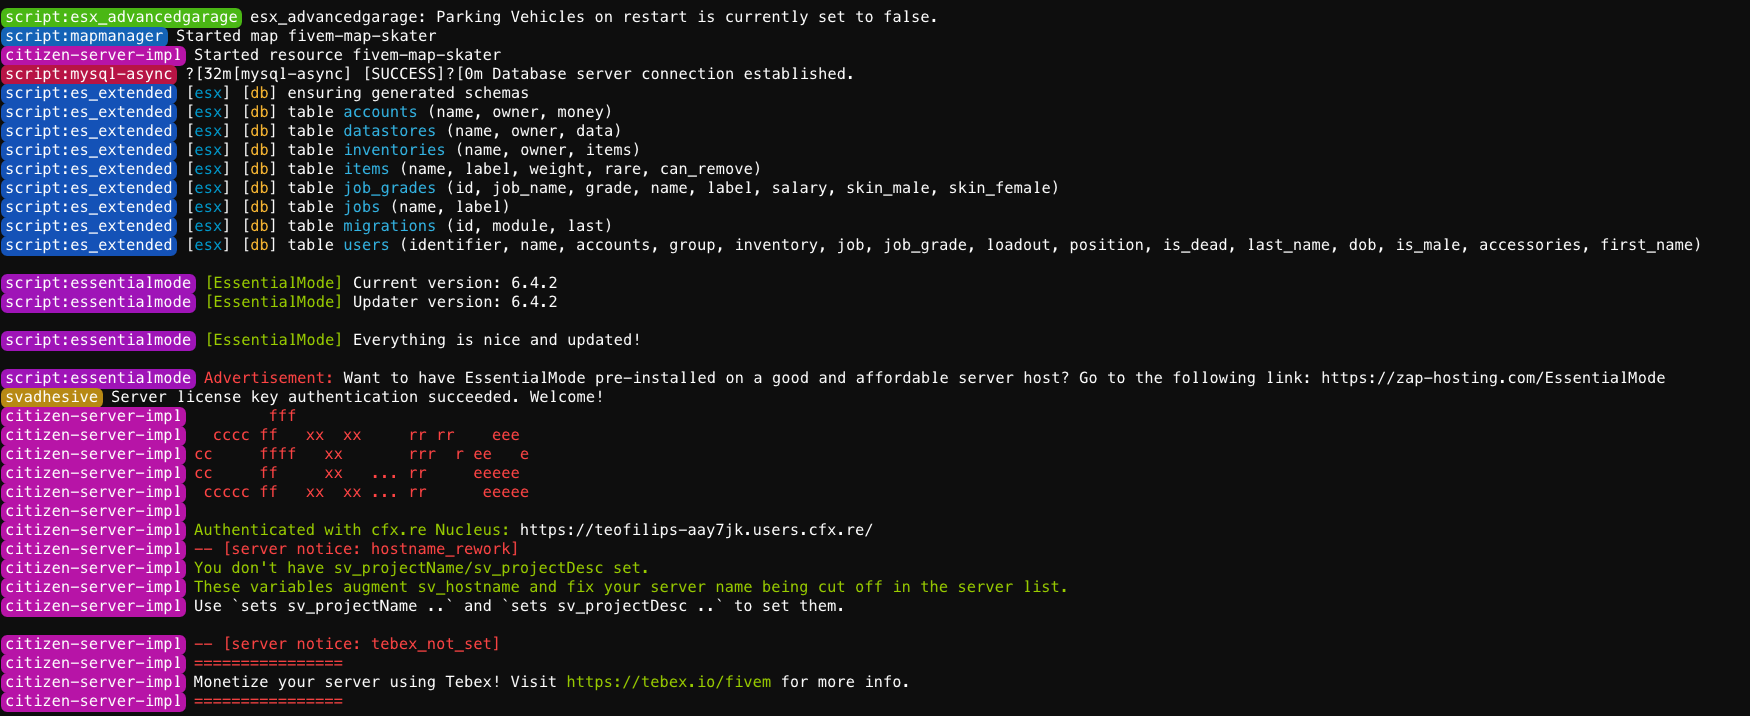 MAEONE] Roblox Hack Script-Ware [WINDOWS & MAC], Script Hub Lua Scripting  Cheat, Officially Script-Ware